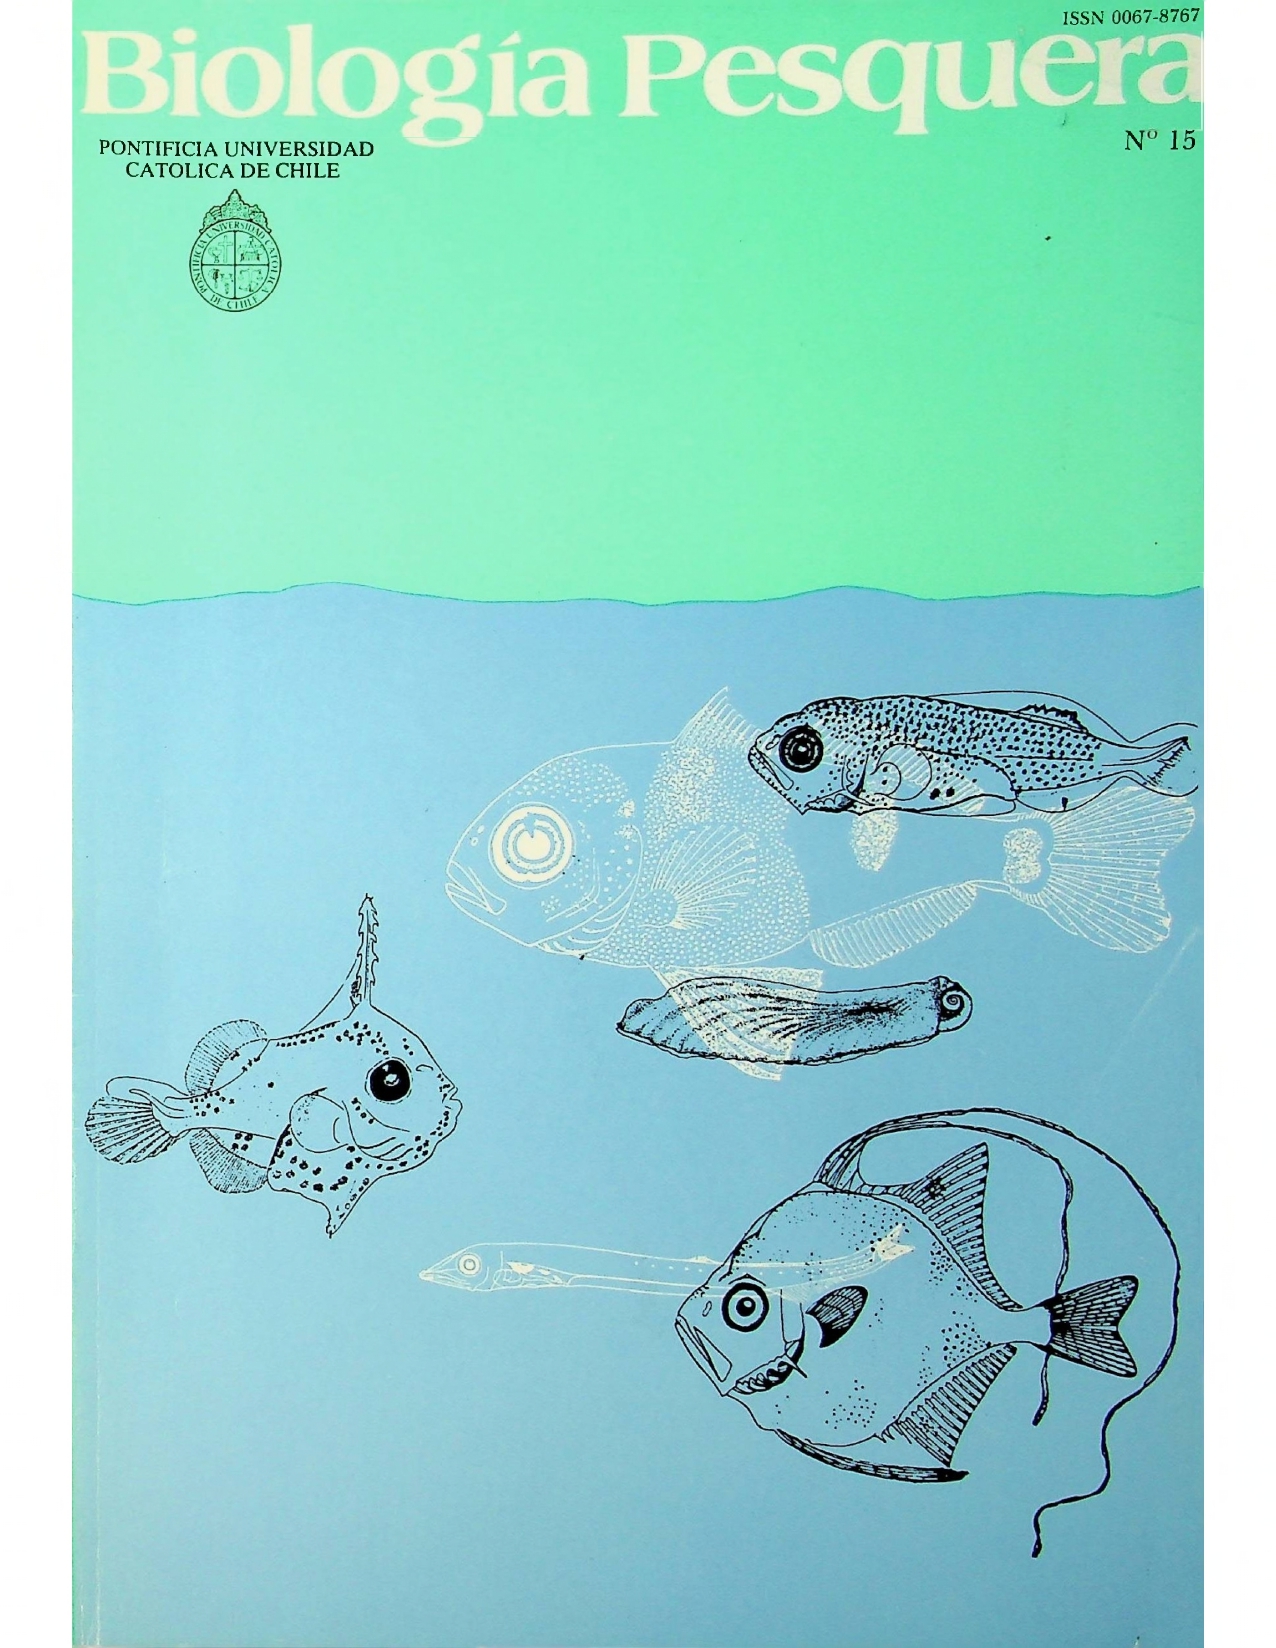 					View No. 15 (1986): Biología Pesquera
				